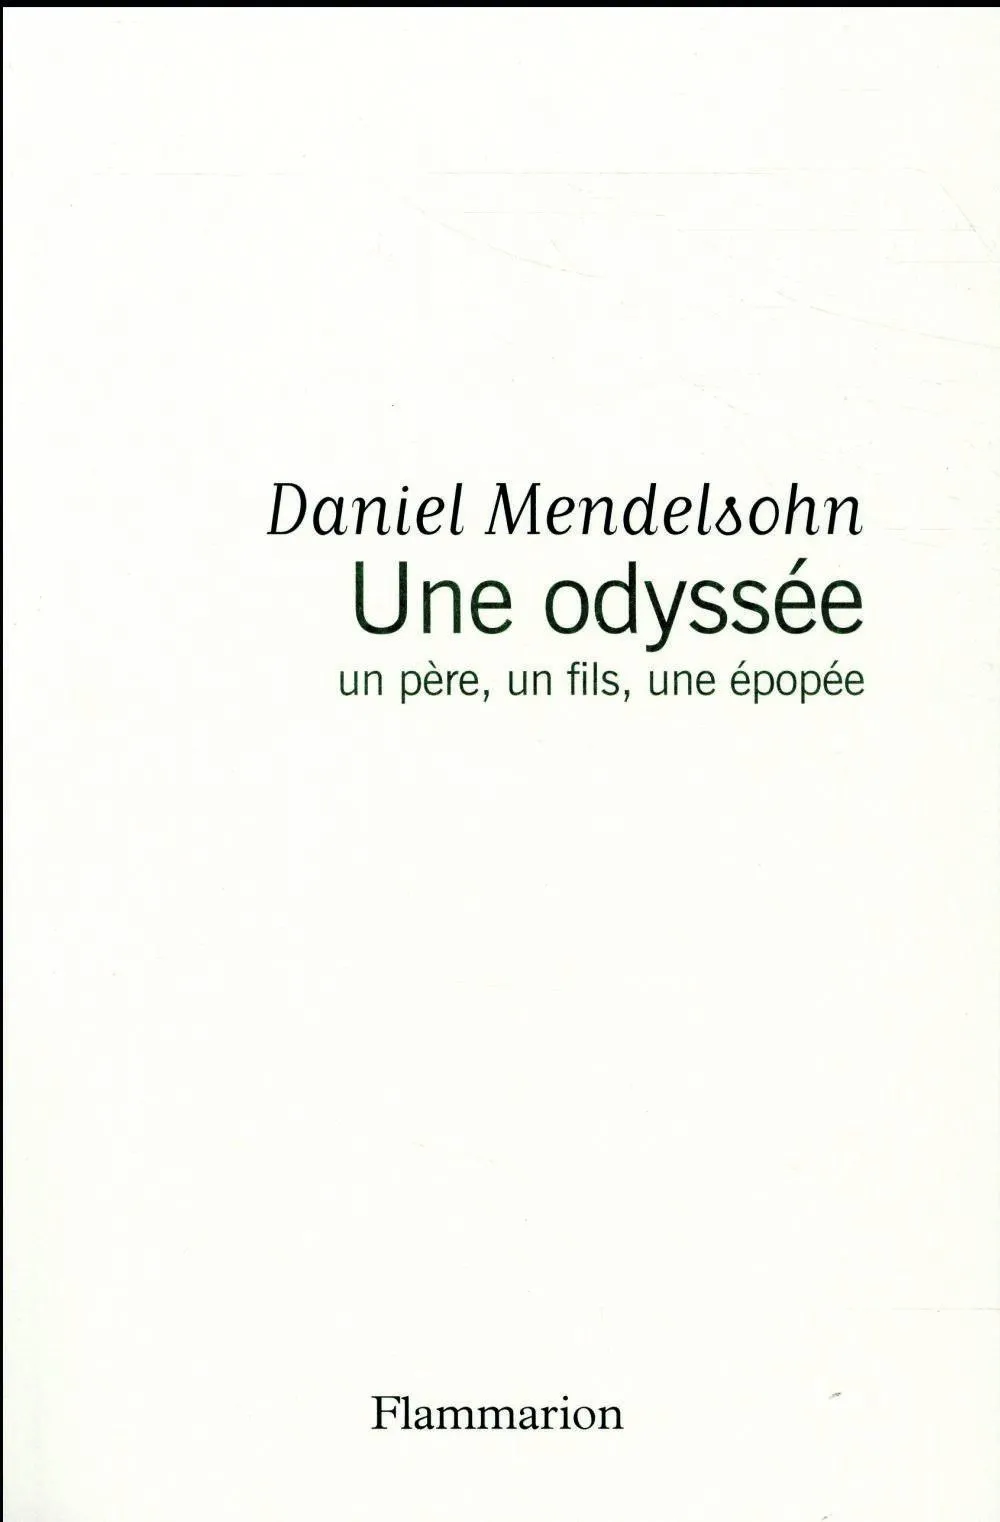 Daniel Mendelsohn,
Une odyssée : Un père, un fils,
une épopée